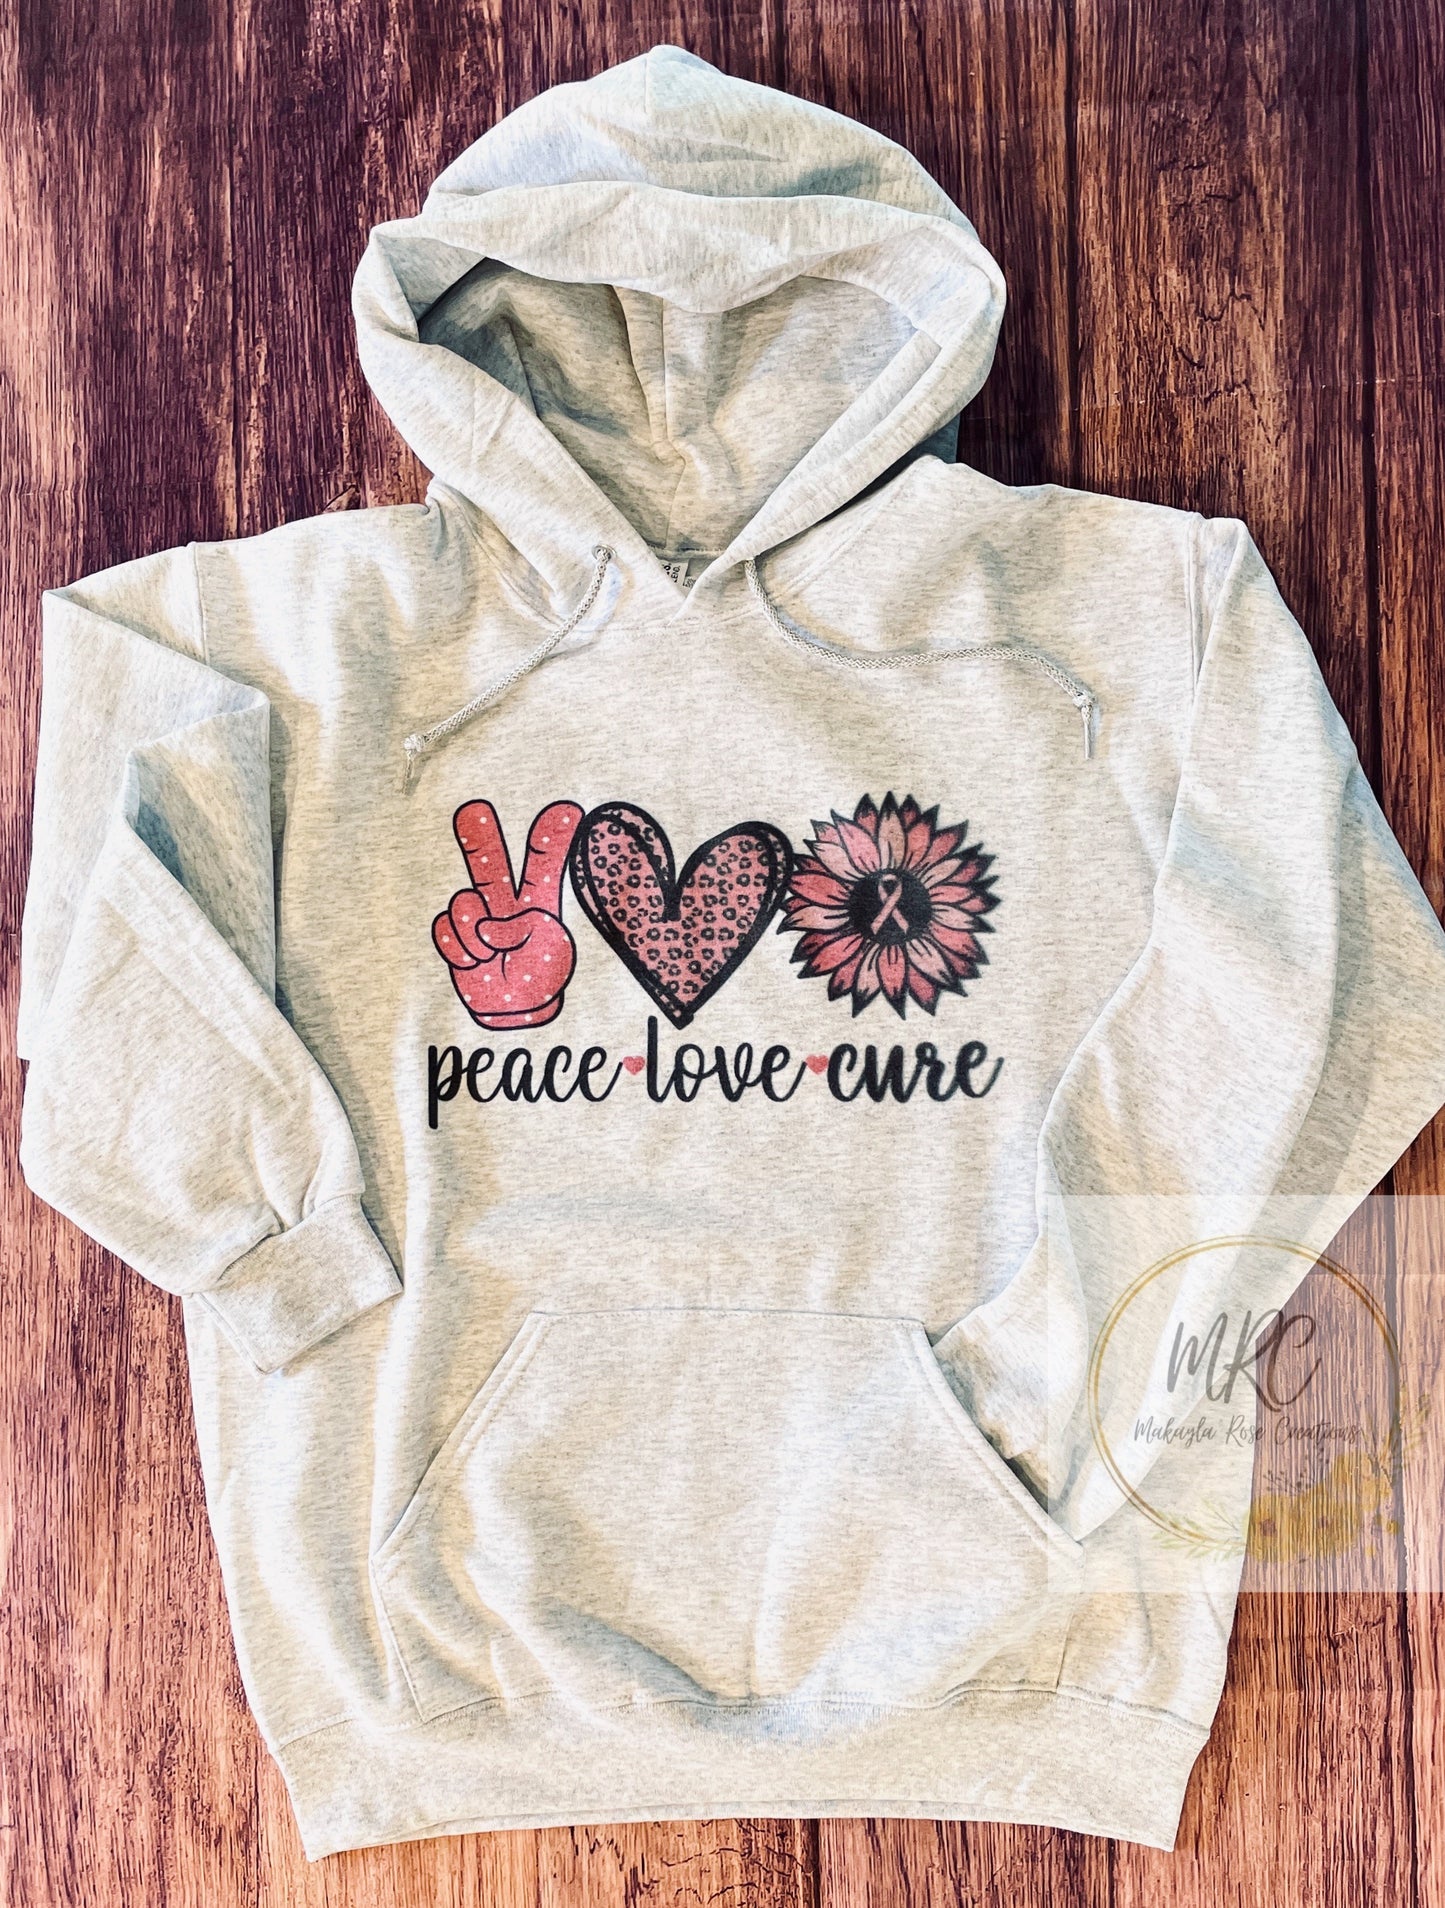 “Peace Love Cure” Hoodie